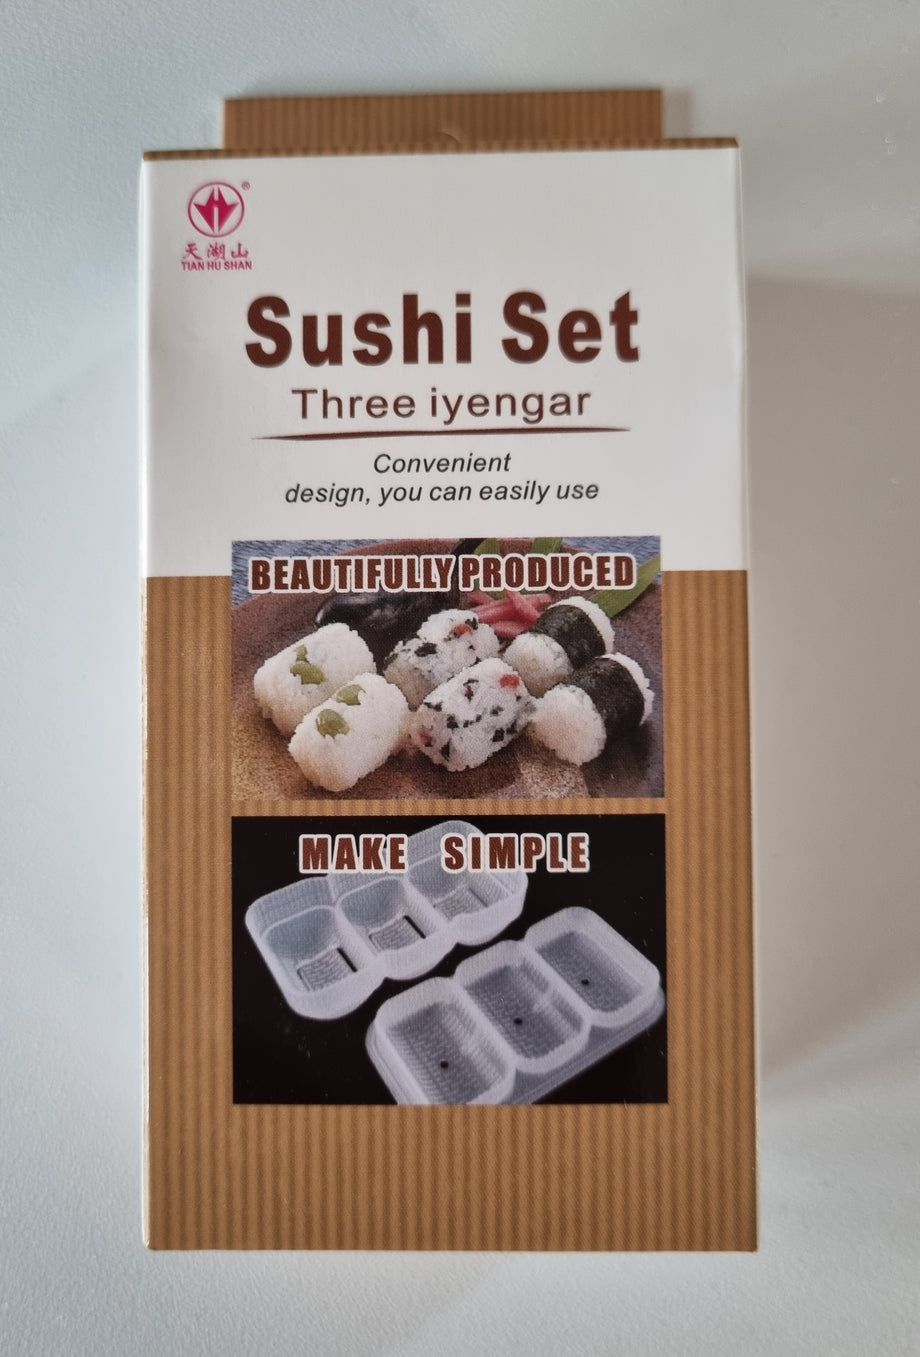 Sushi Sushi Store - Nipponia Guanti monouso Guanti antiaderenti per cucina.  Adatti a manipolare riso per sushi, impasti e prodotti alimentari. Speciali  per sushiman🍣 • ambidestri • trasparenti • impermeabili • non